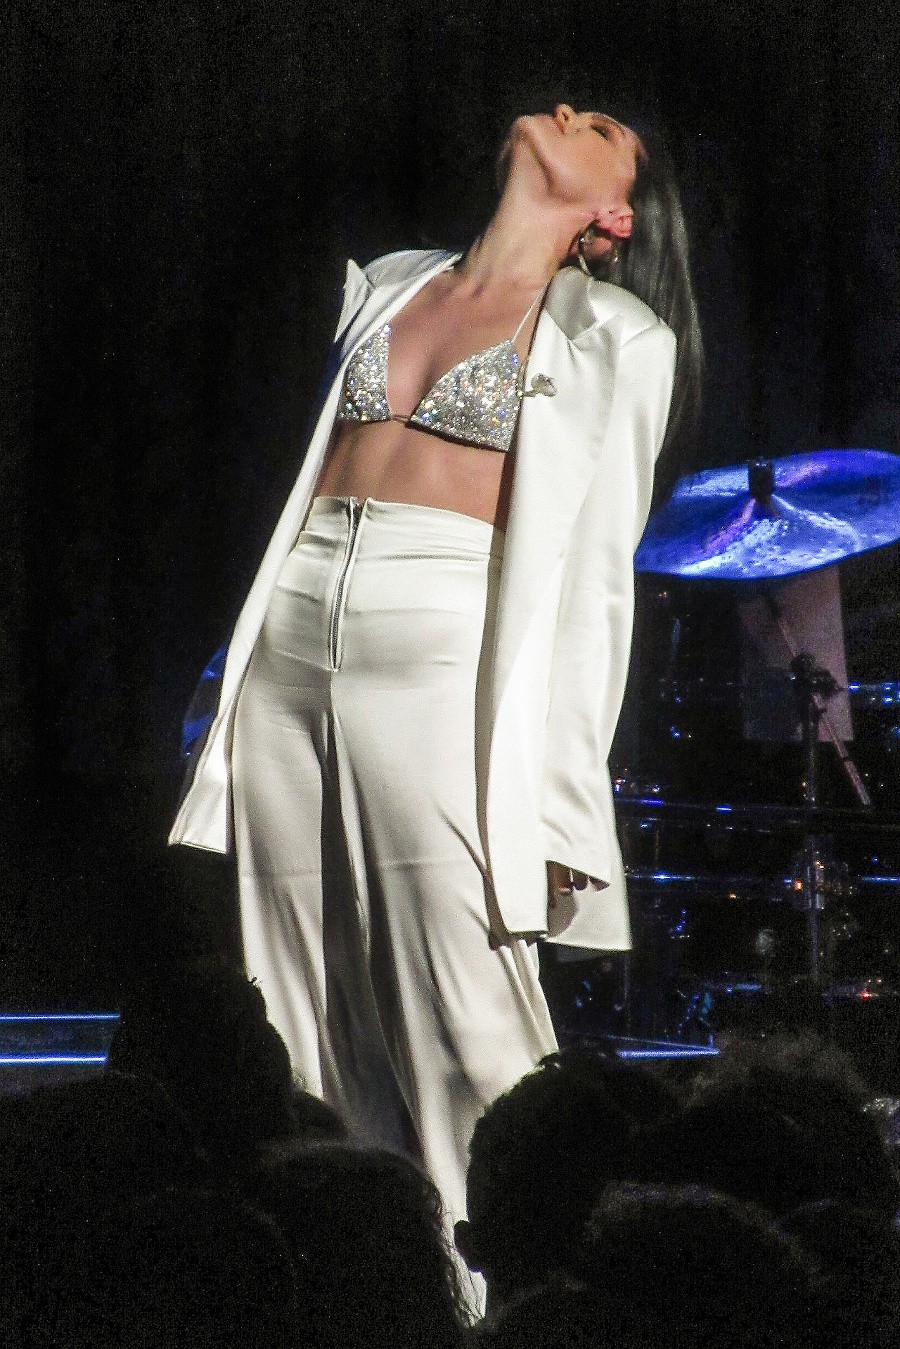 Speváčka Jessie J